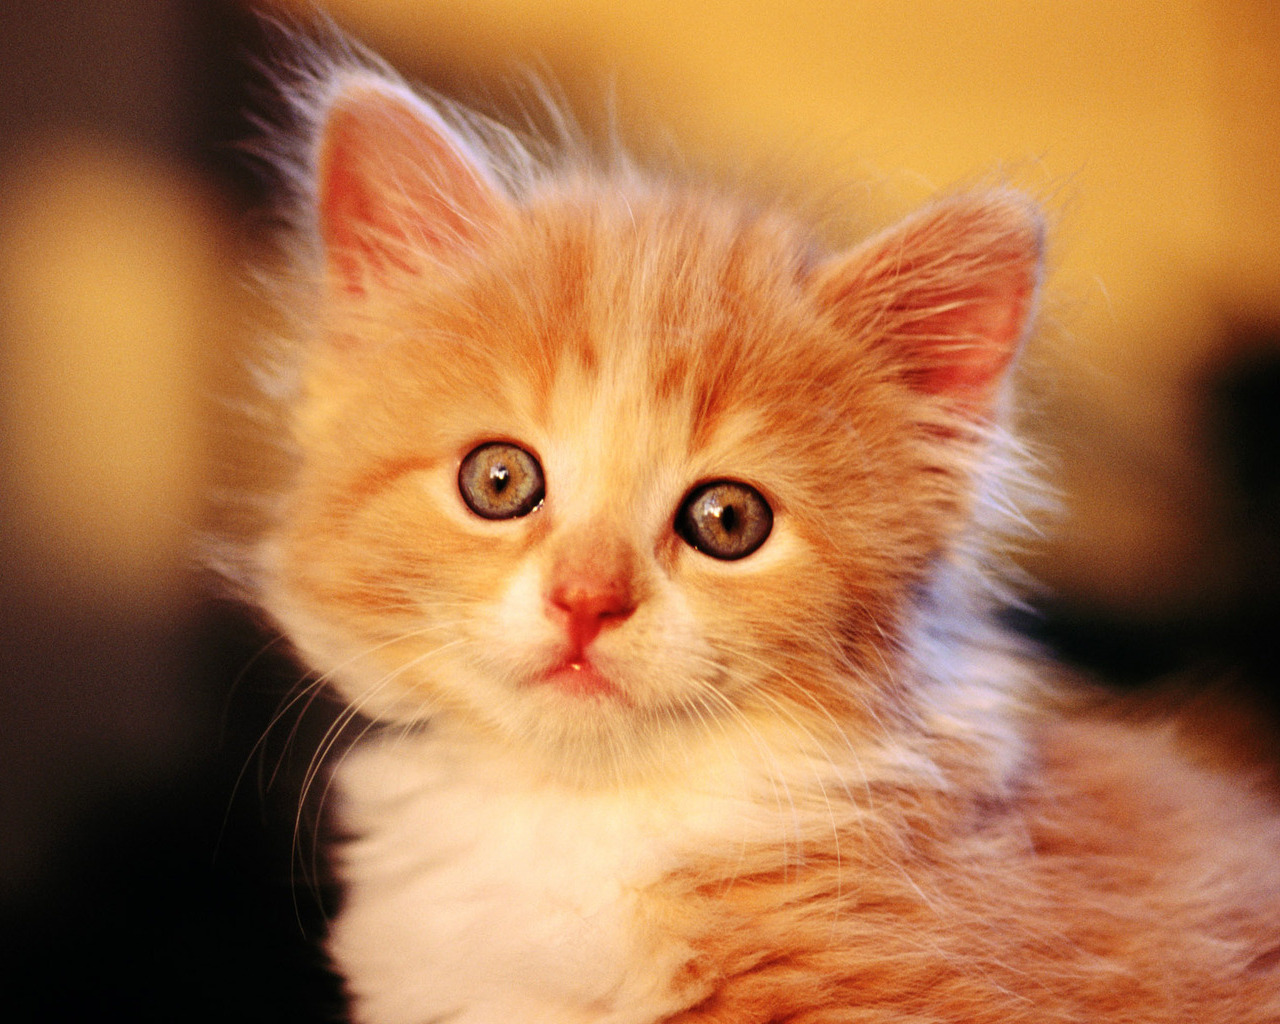 Жалостливый и милый взгляд рыжего котенка Кошки картинки, обои рабочий стол